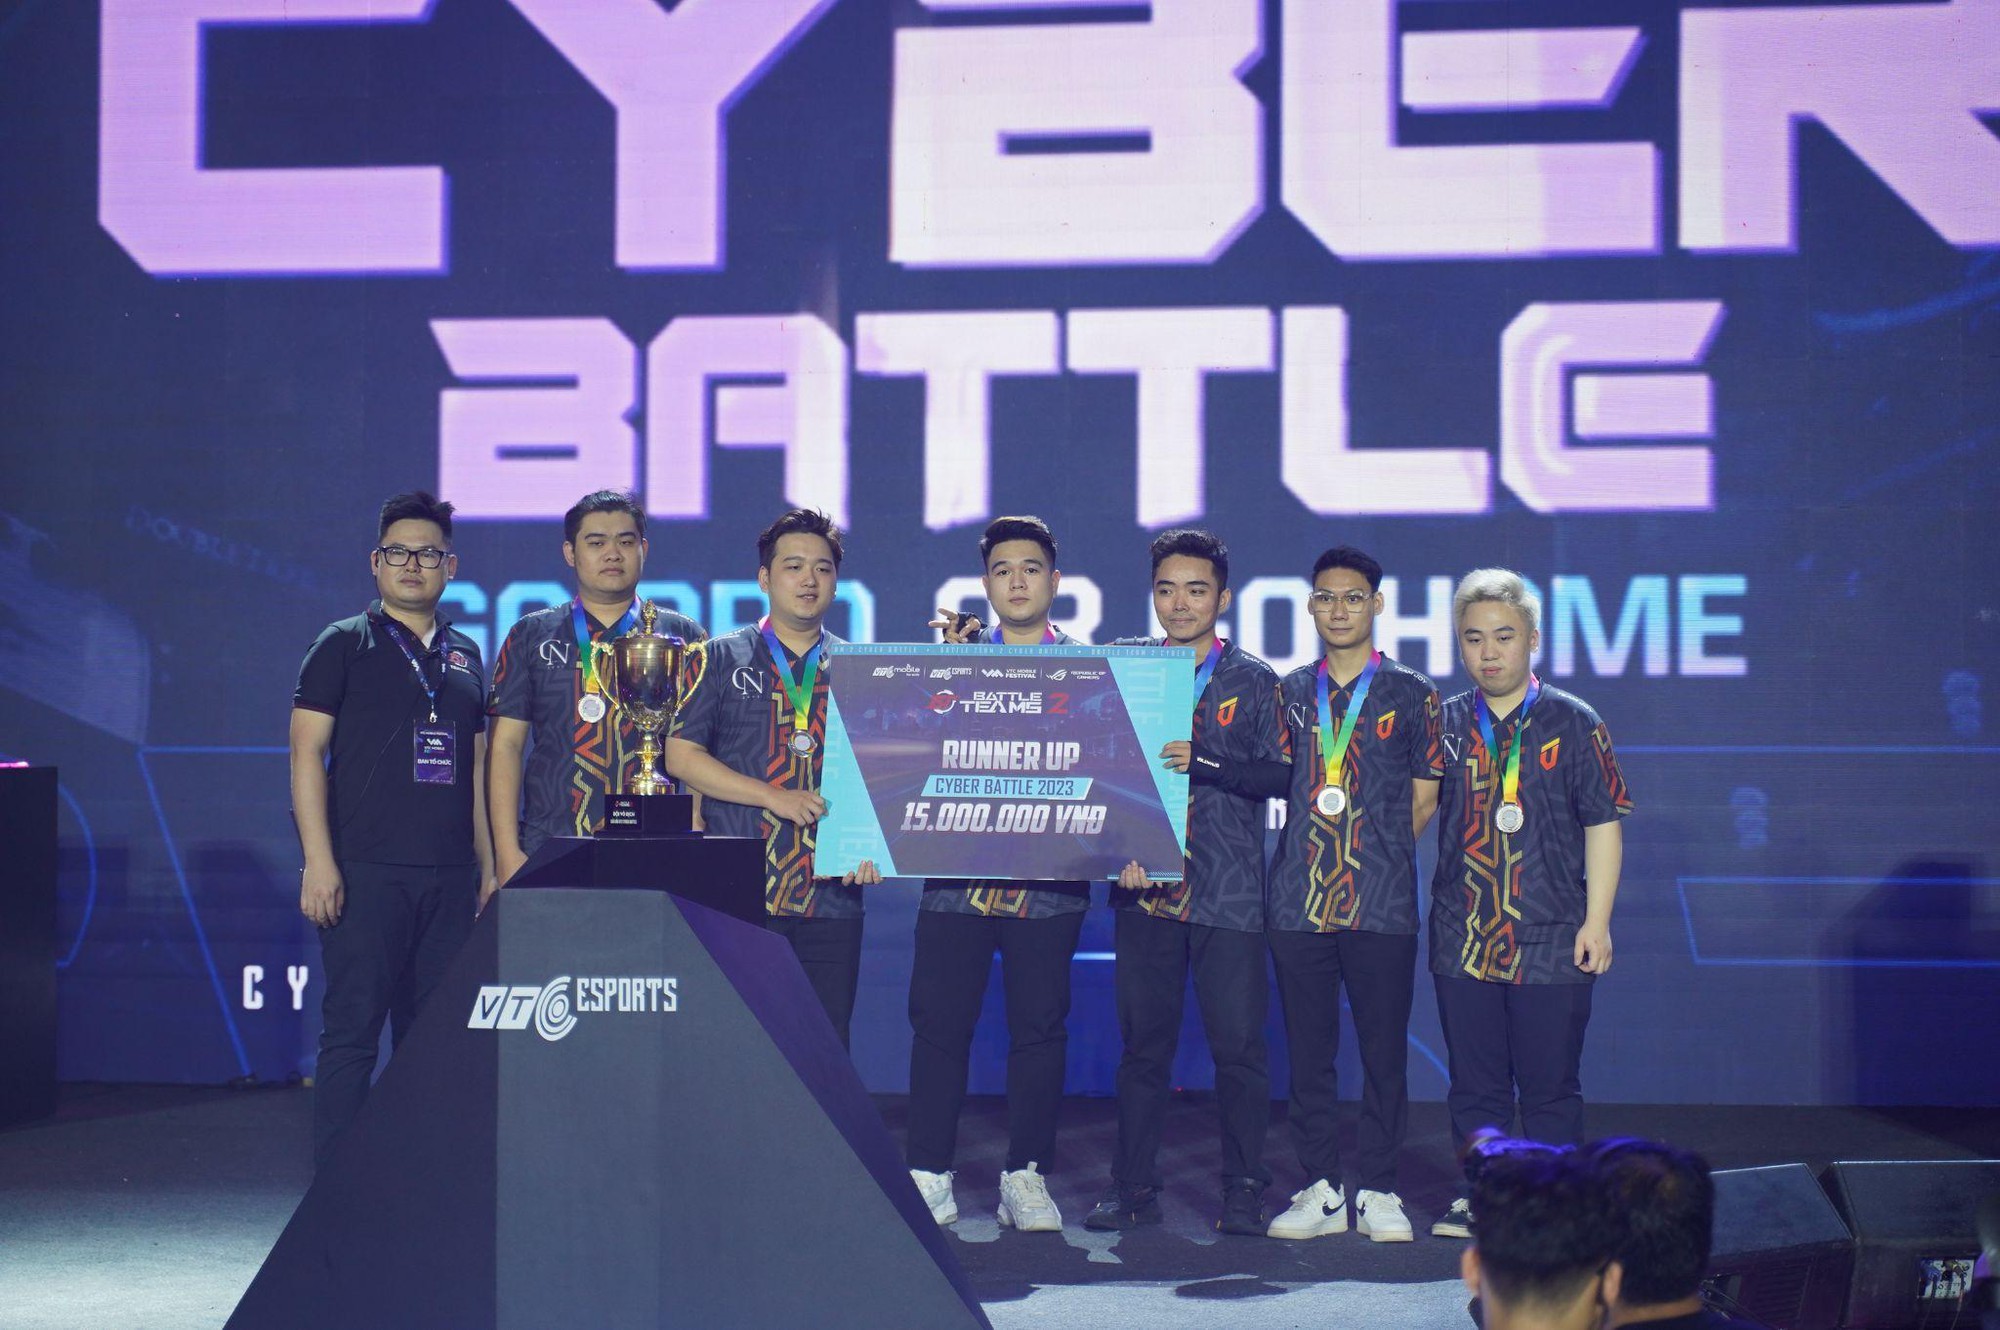 Champion Spartacus Chim Sẻ Đi Nắng gây ấn tượng mạnh trong giải Cyber Battle tại VTC Mobile Festival - Ảnh 2.